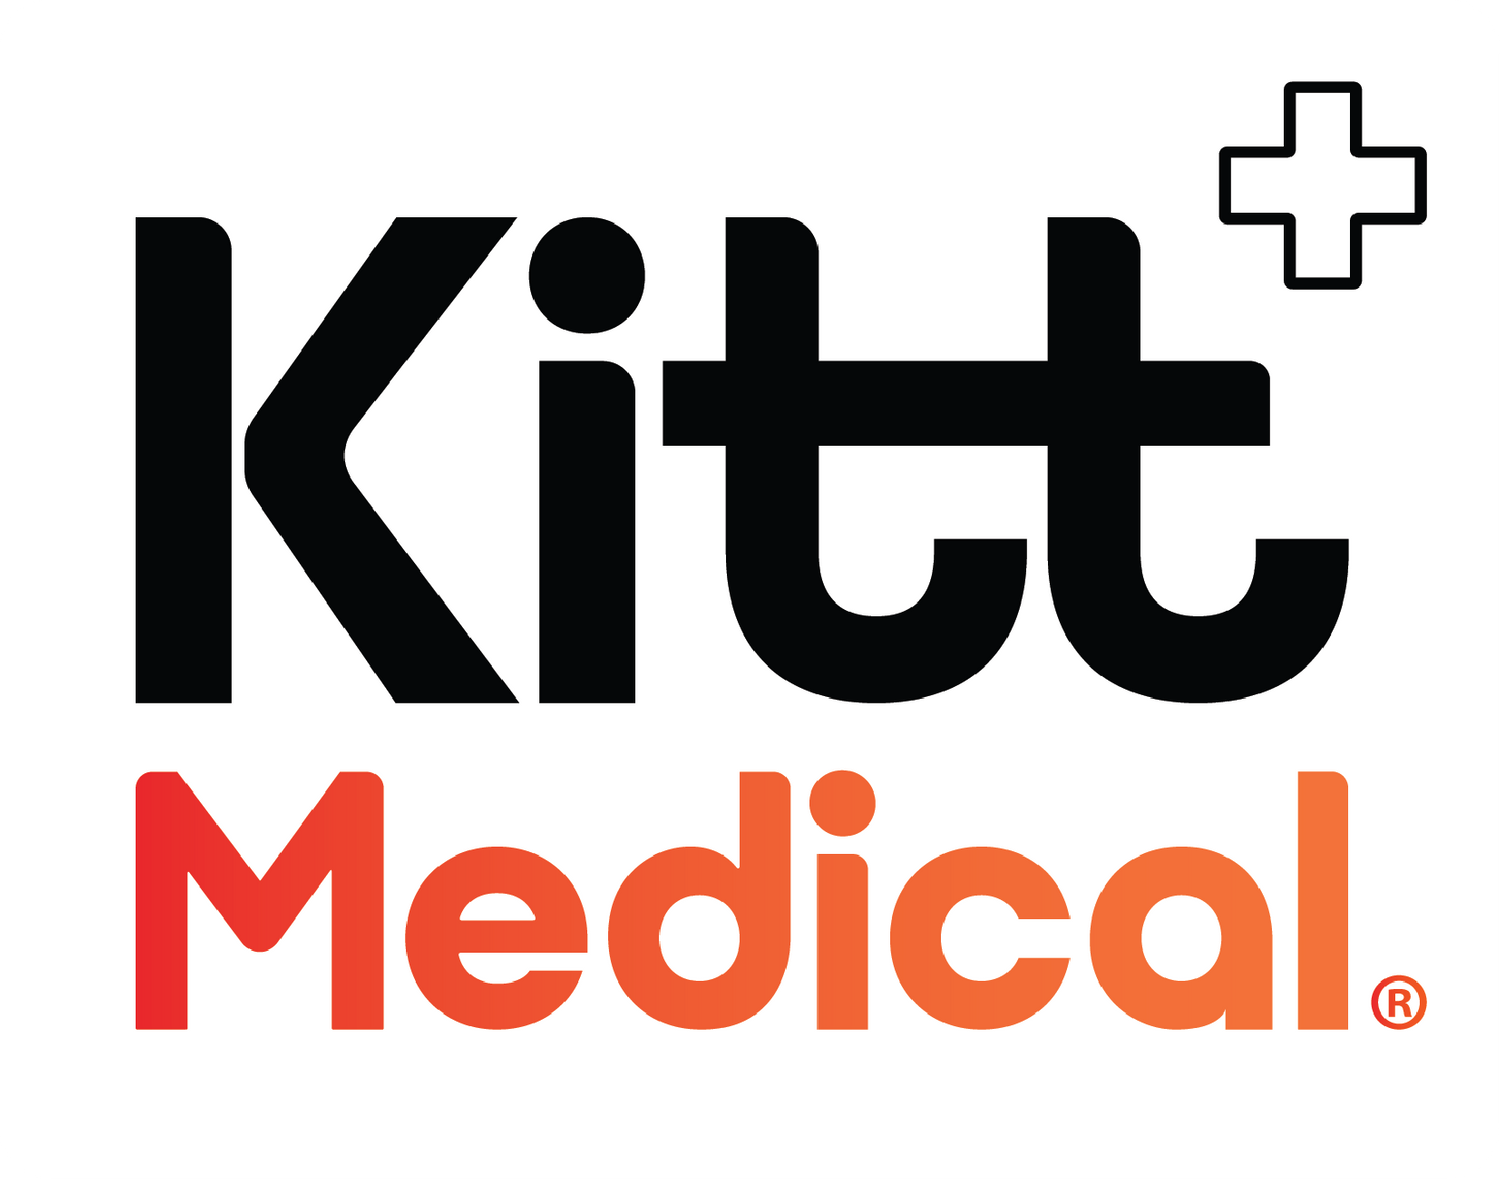 Kitt Medical